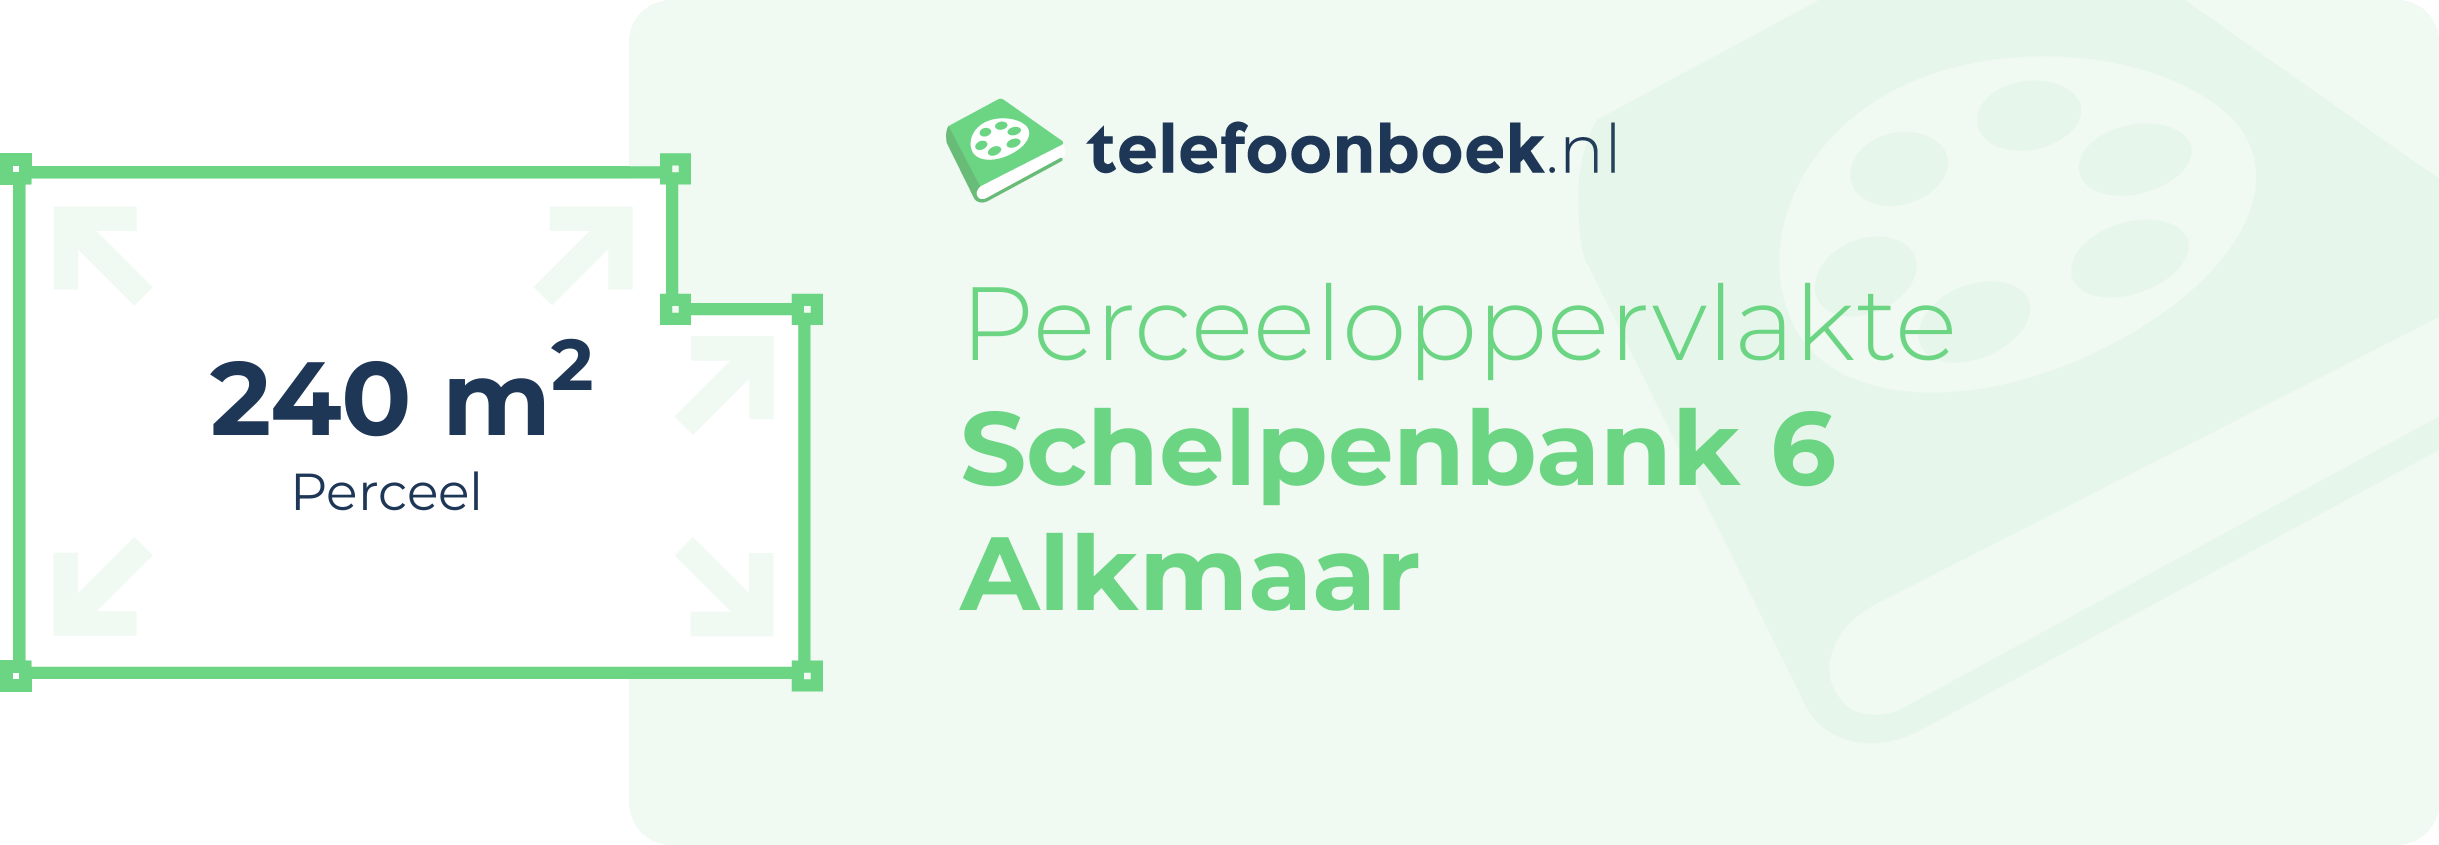 Perceeloppervlakte Schelpenbank 6 Alkmaar